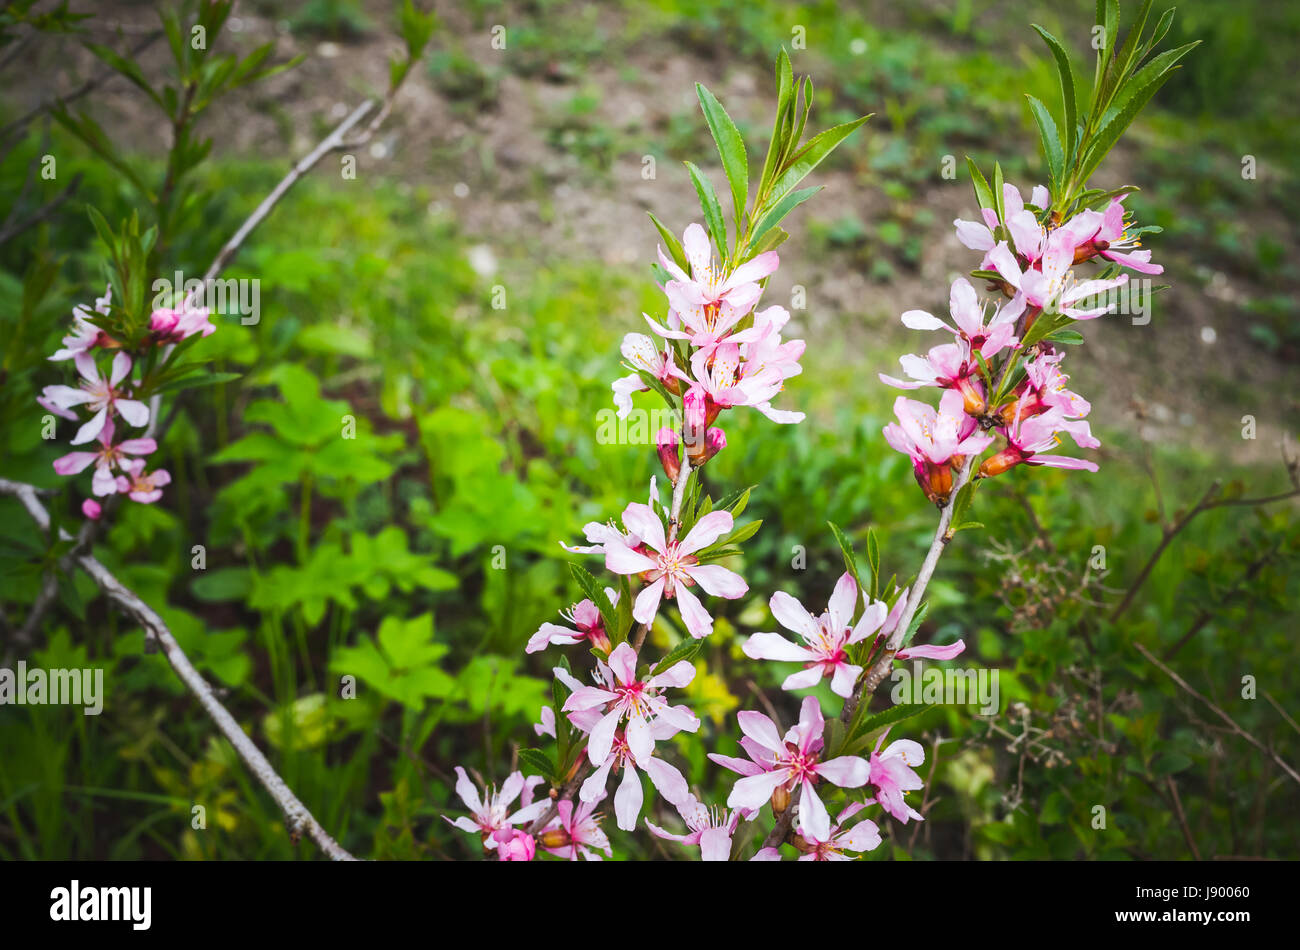 Amandier en fleurs. Fleurs rose vif sur les branches dans un jardin de printemps, photo en gros plan avec selective focus Banque D'Images